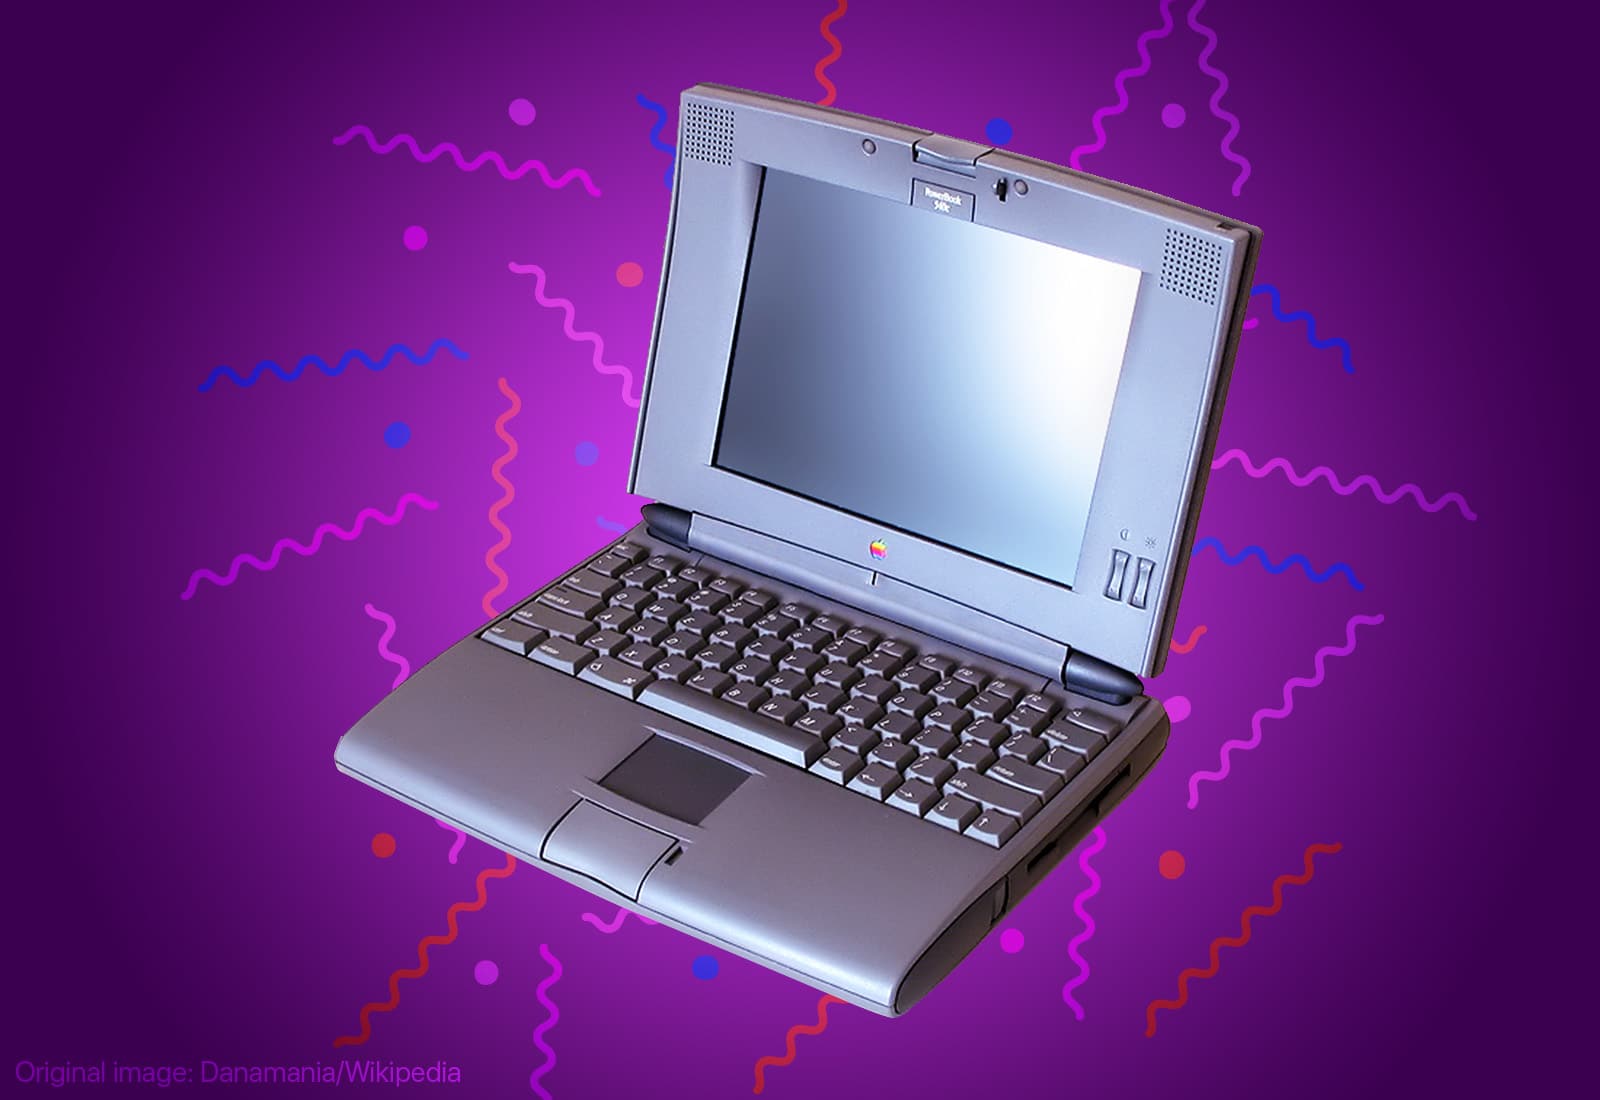 Этот день в истории Apple: PowerBook 540c стал лучшим ноутбуком среди продуктов Apple